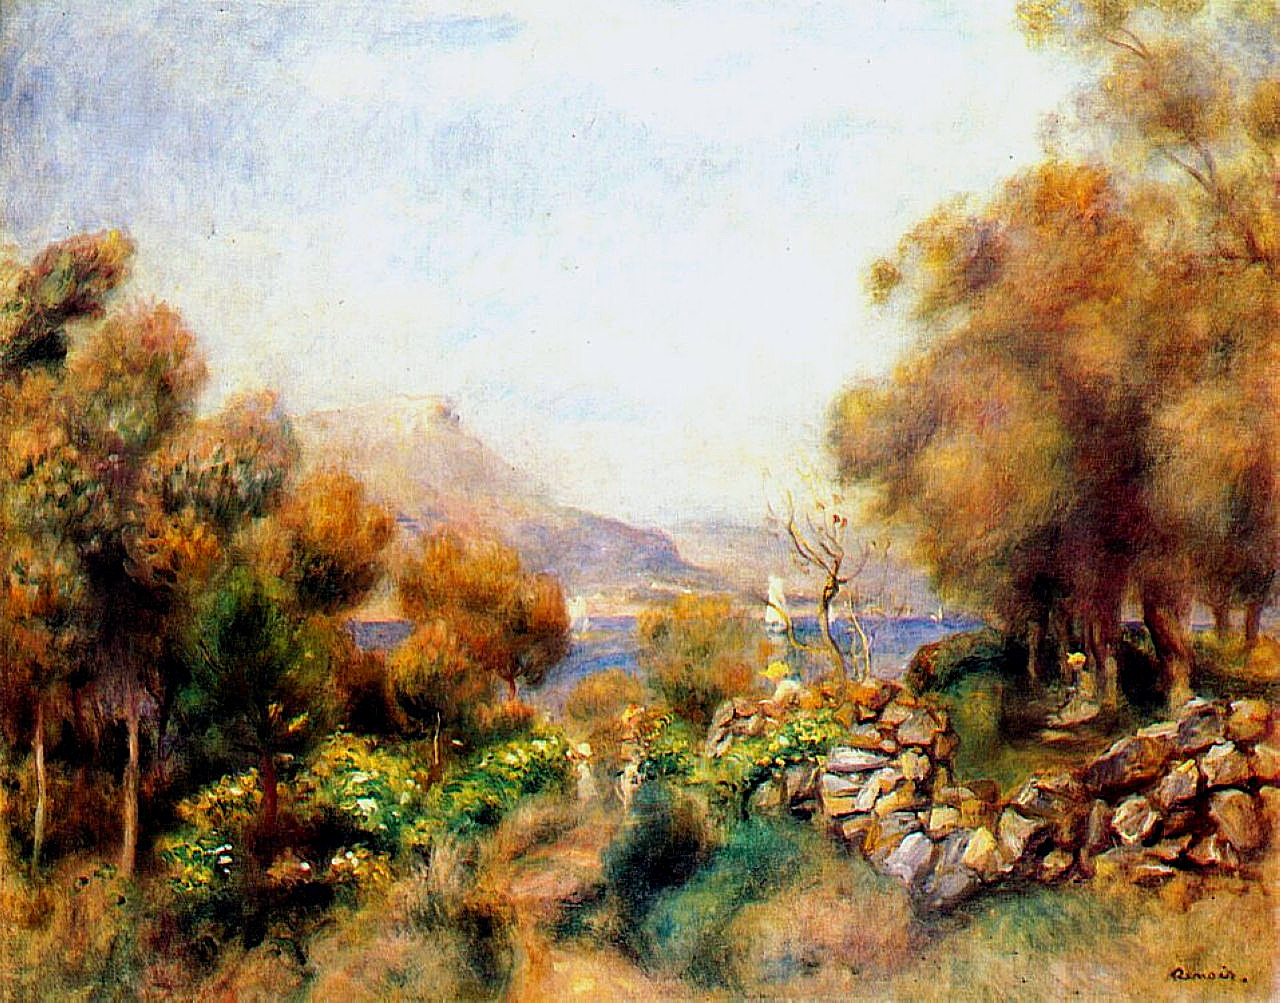 Antibes by Renoir - Pierre-Auguste Renoir painting on canvas